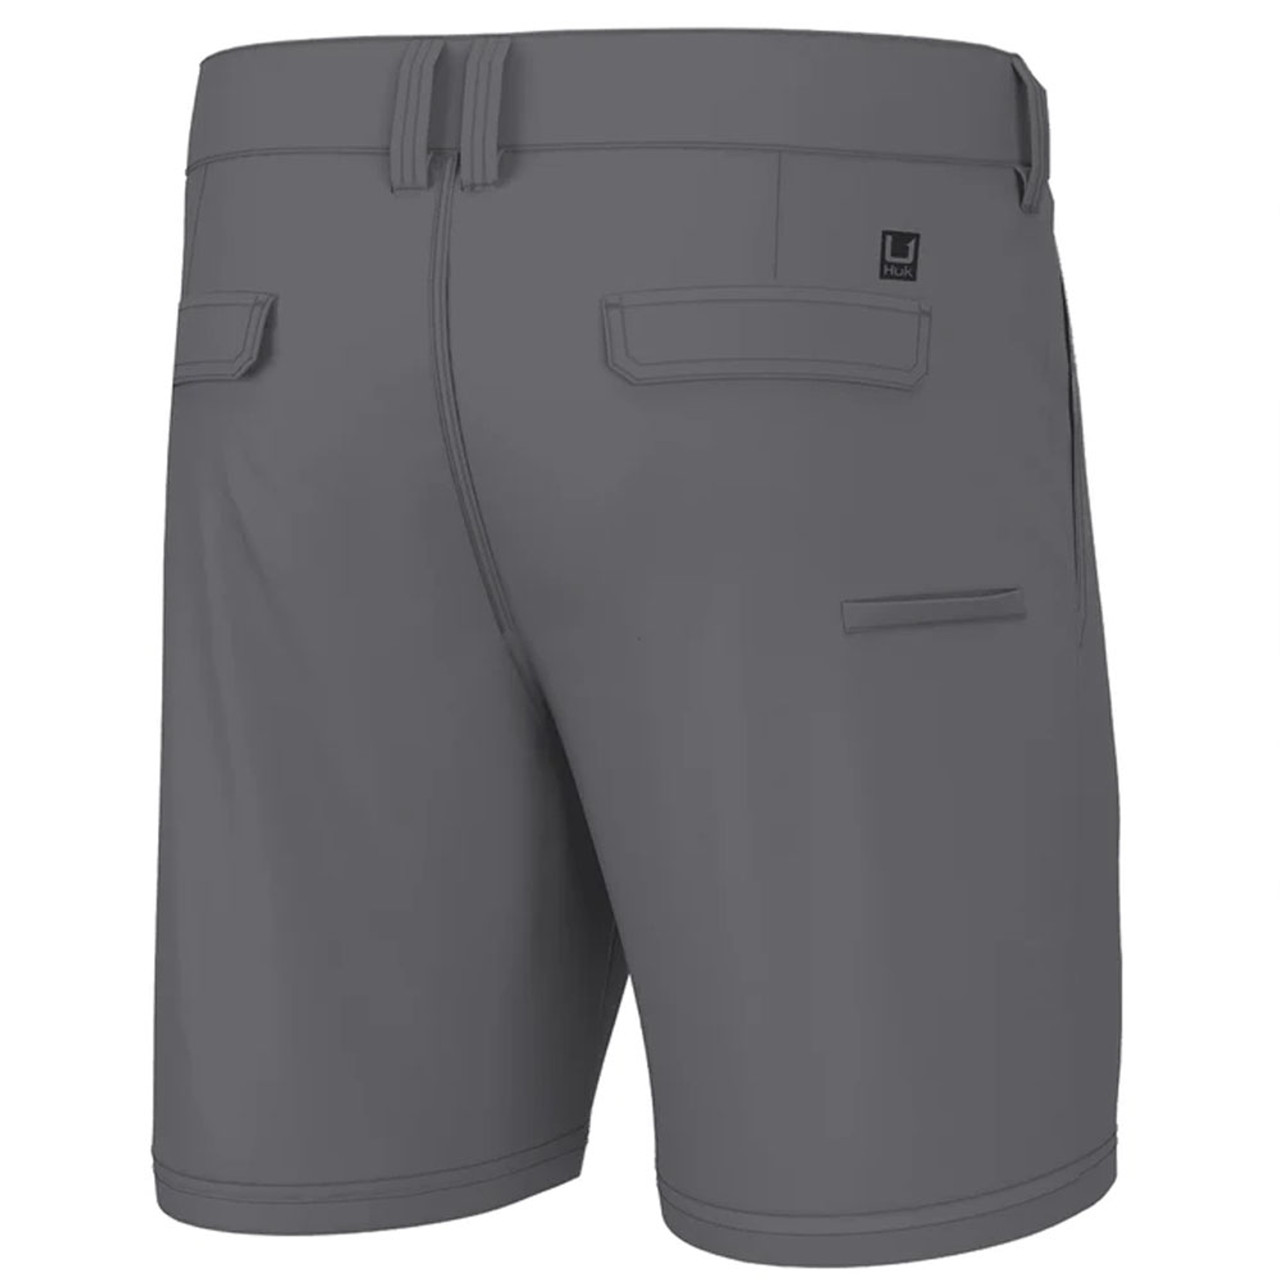 Huk Men's Pursuit 6 Inch Shorts